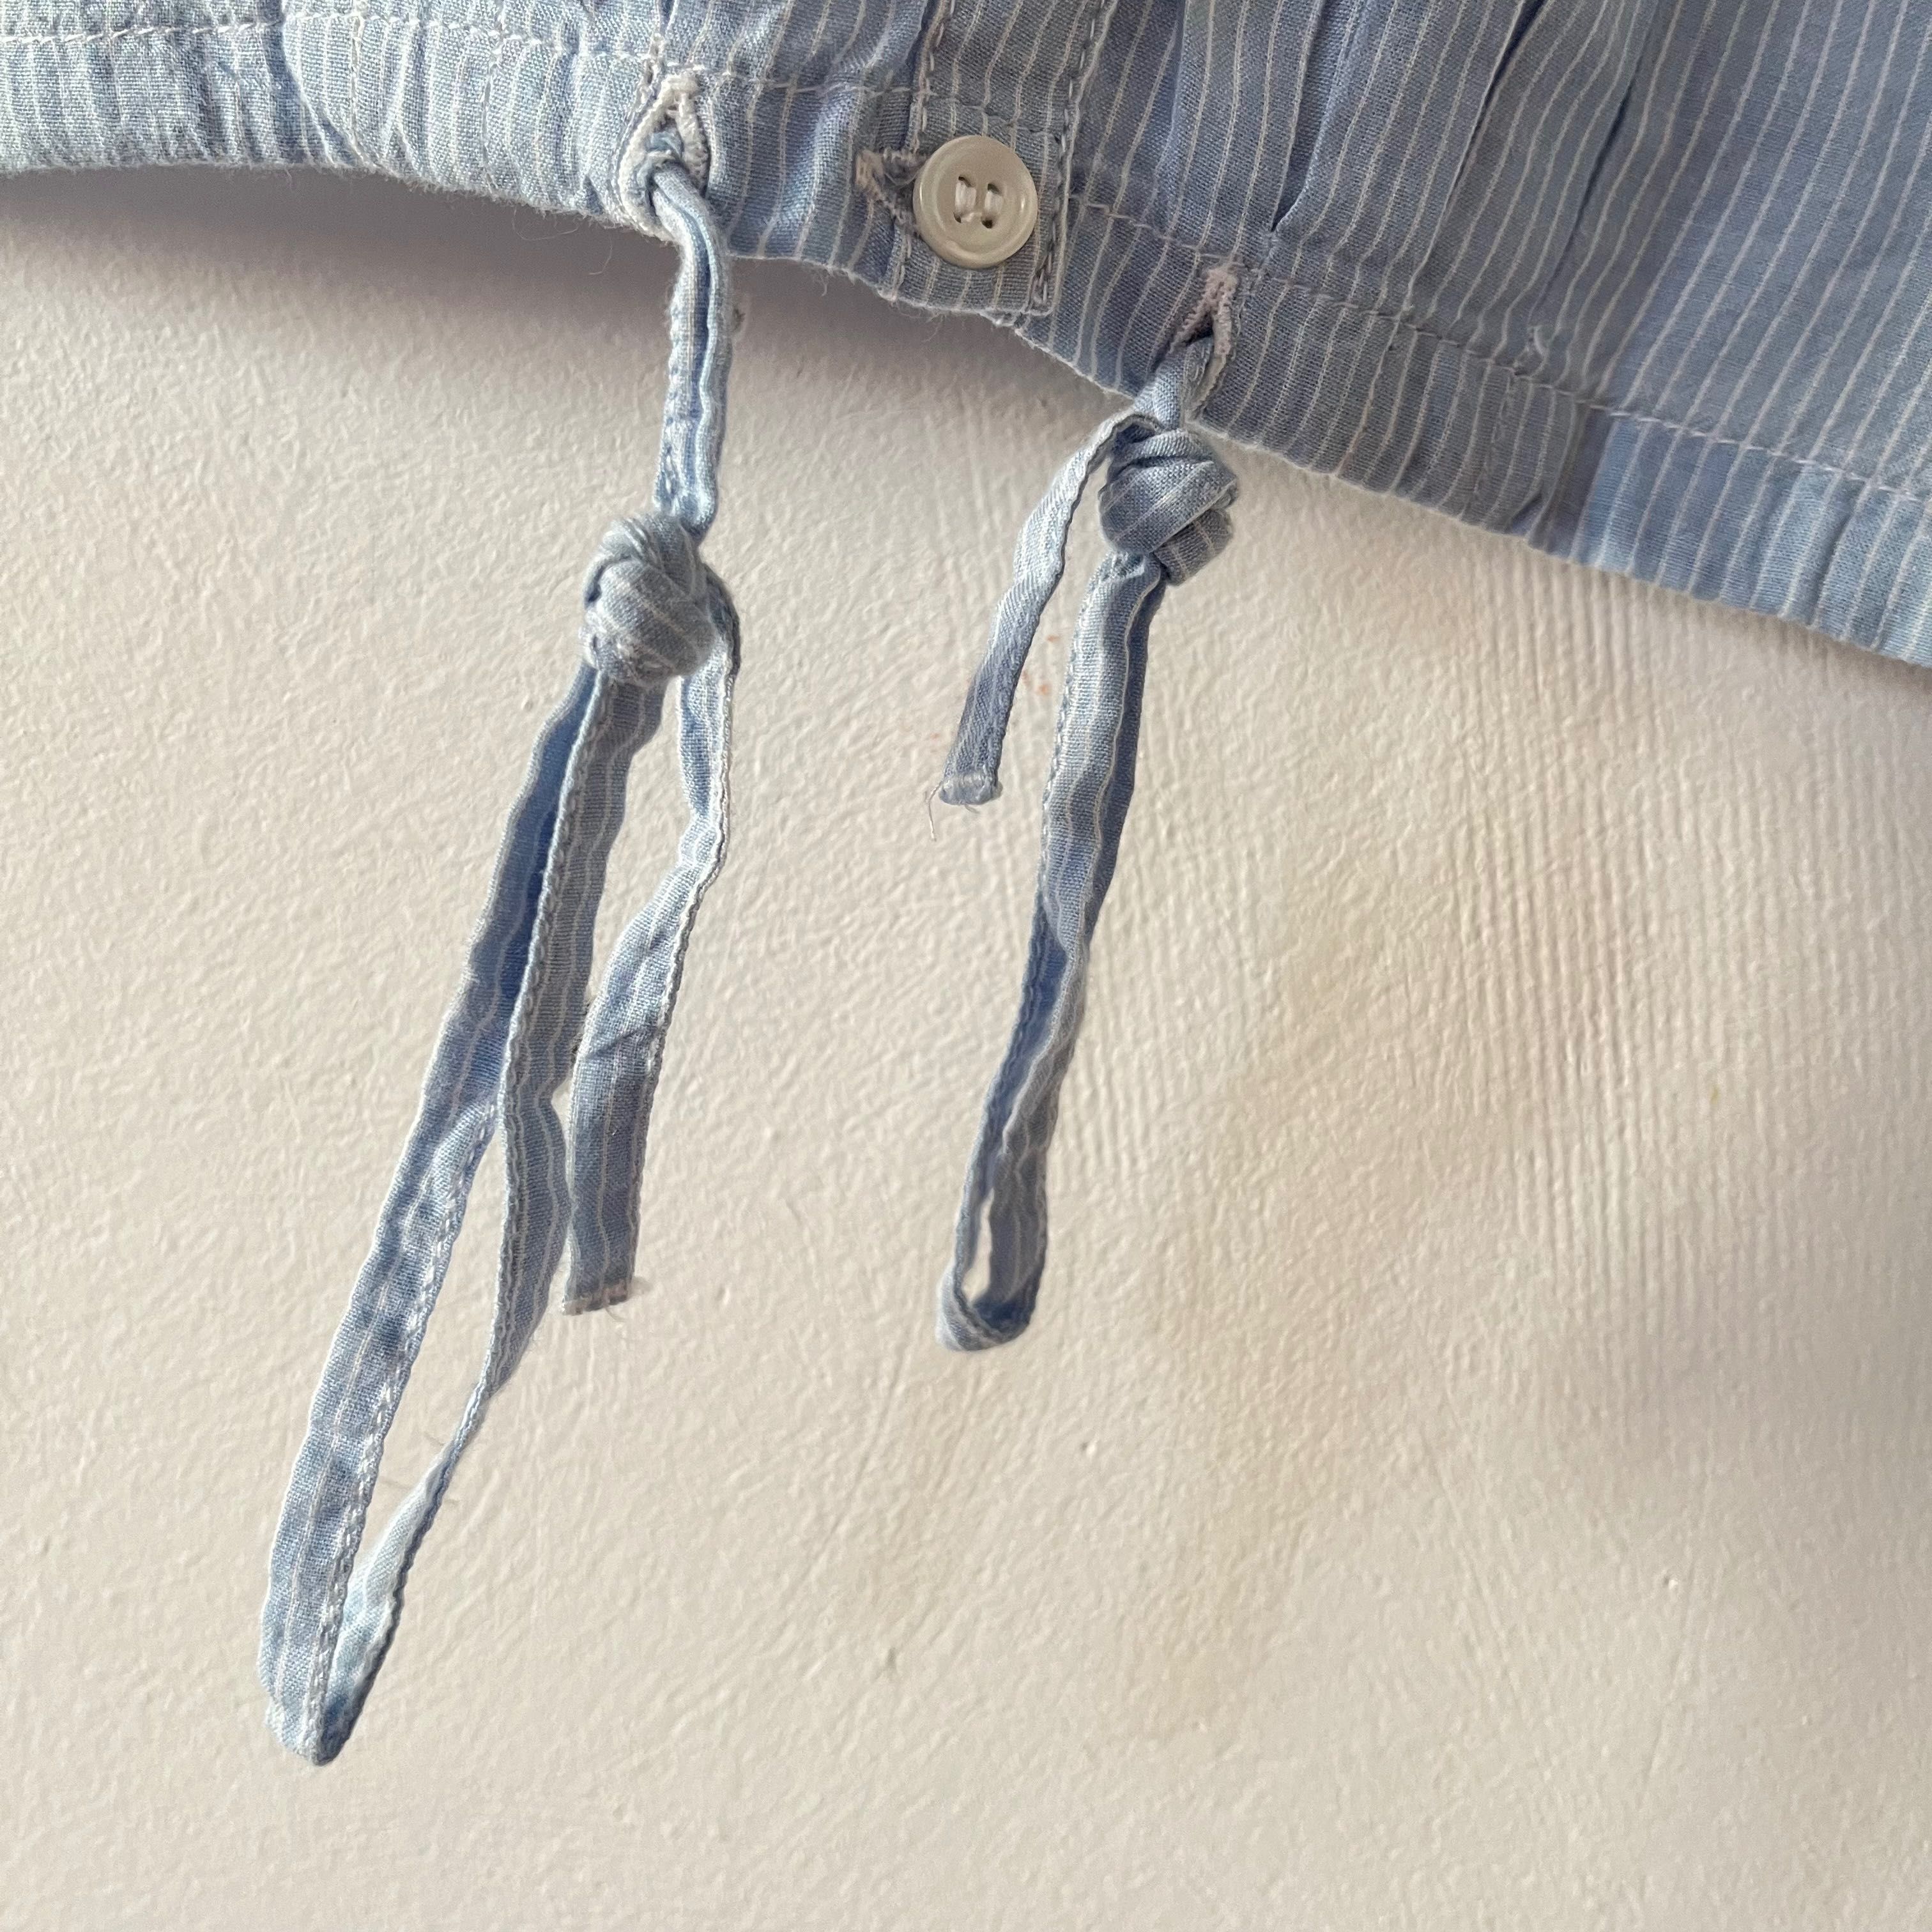 Bluzka Kappahl rozmiar XL w stylu koszulowym z zaszewkami